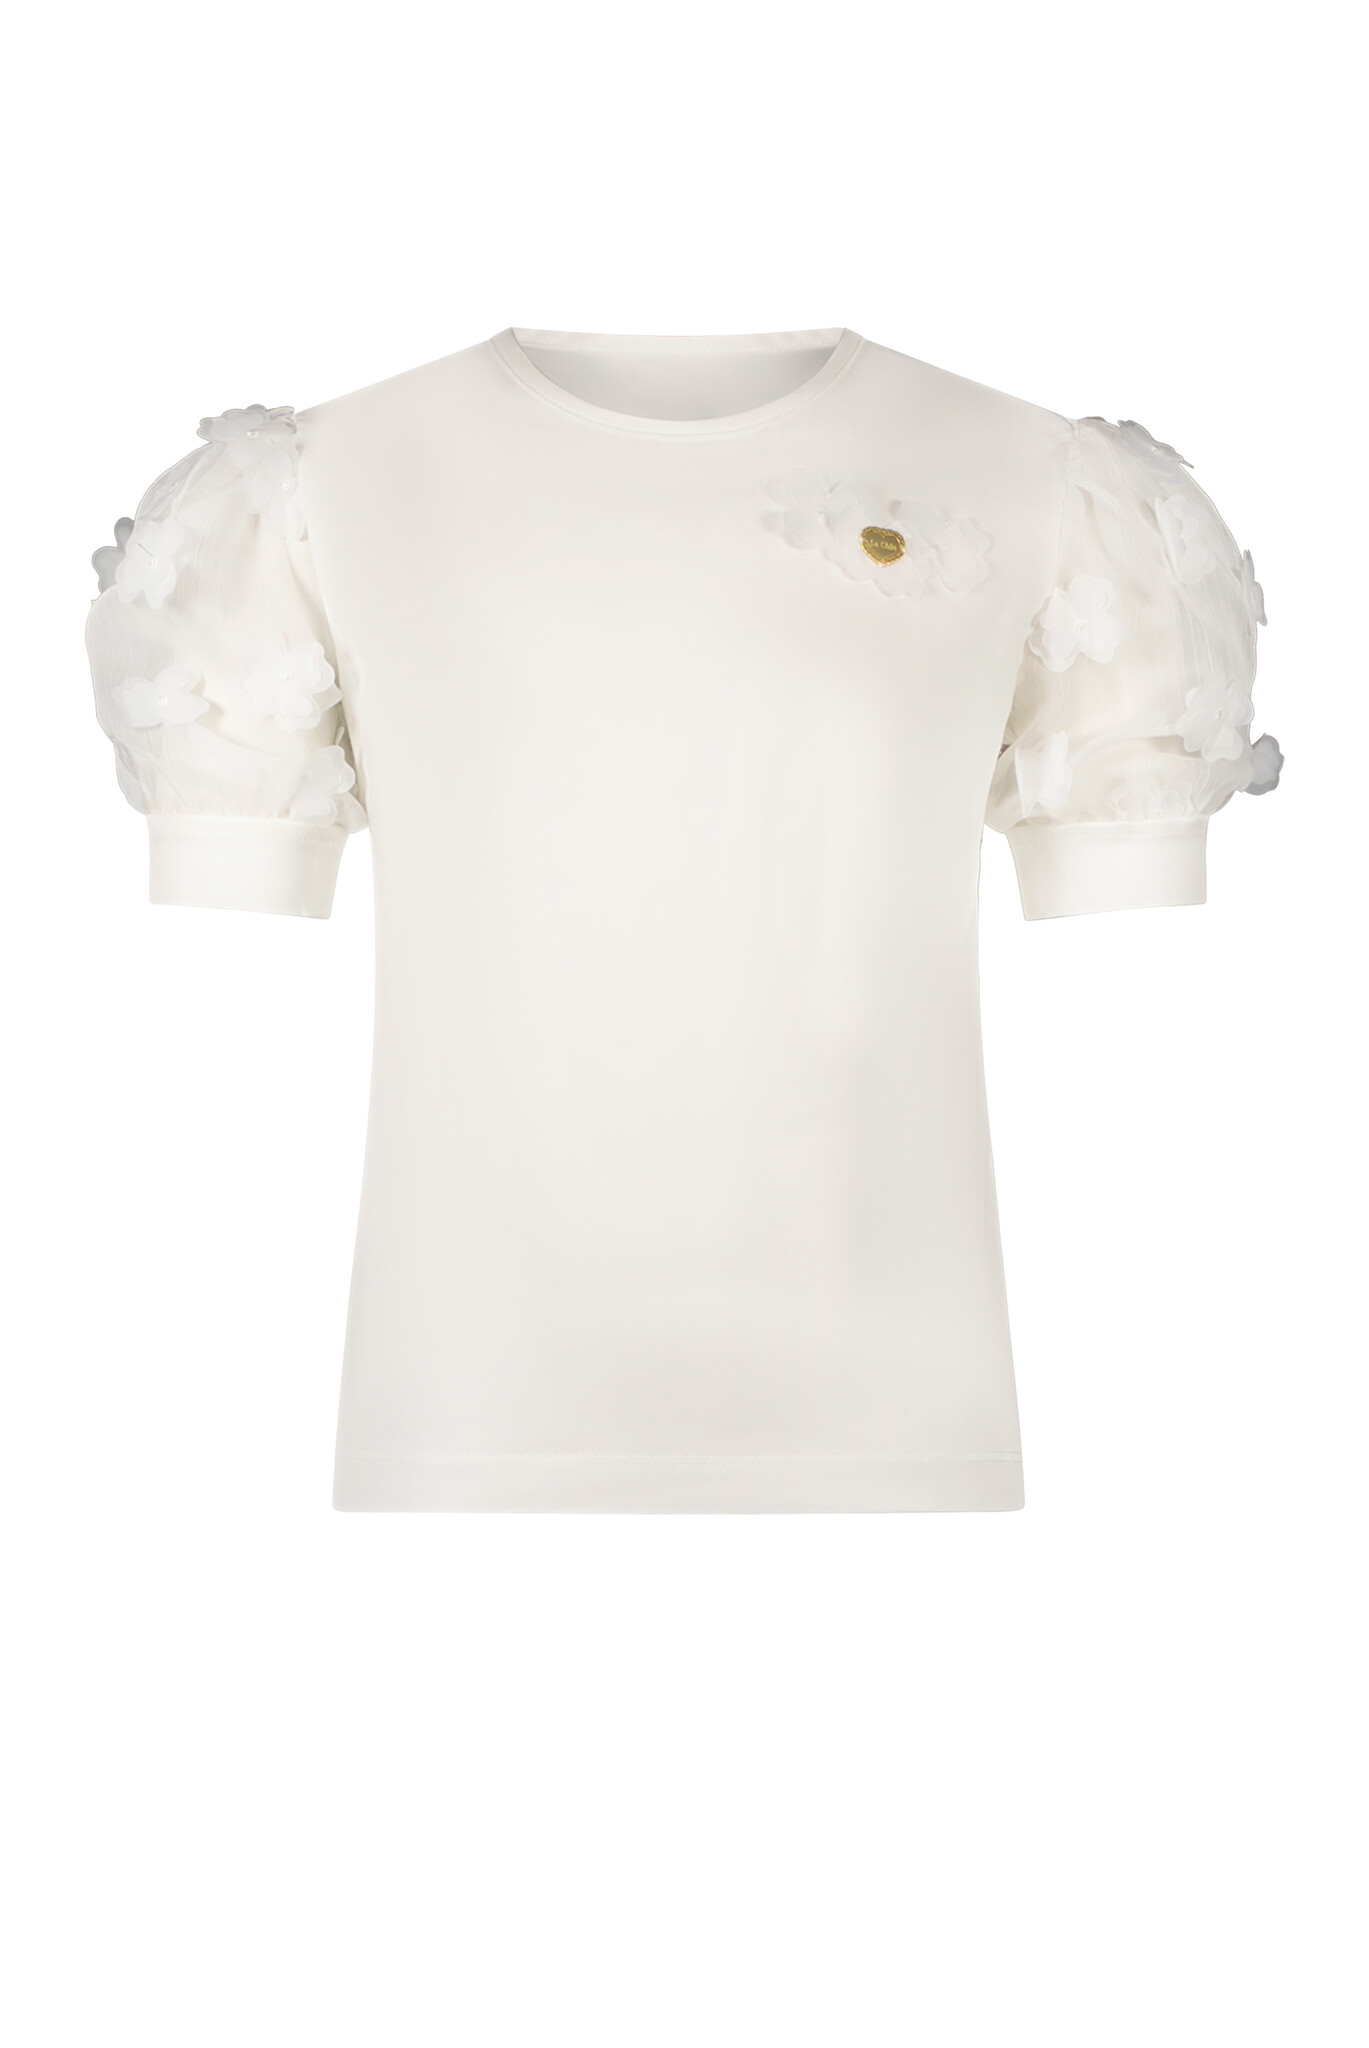 Le Chic C312-5400 Meisjes T-shirt - Off White - Maat 140